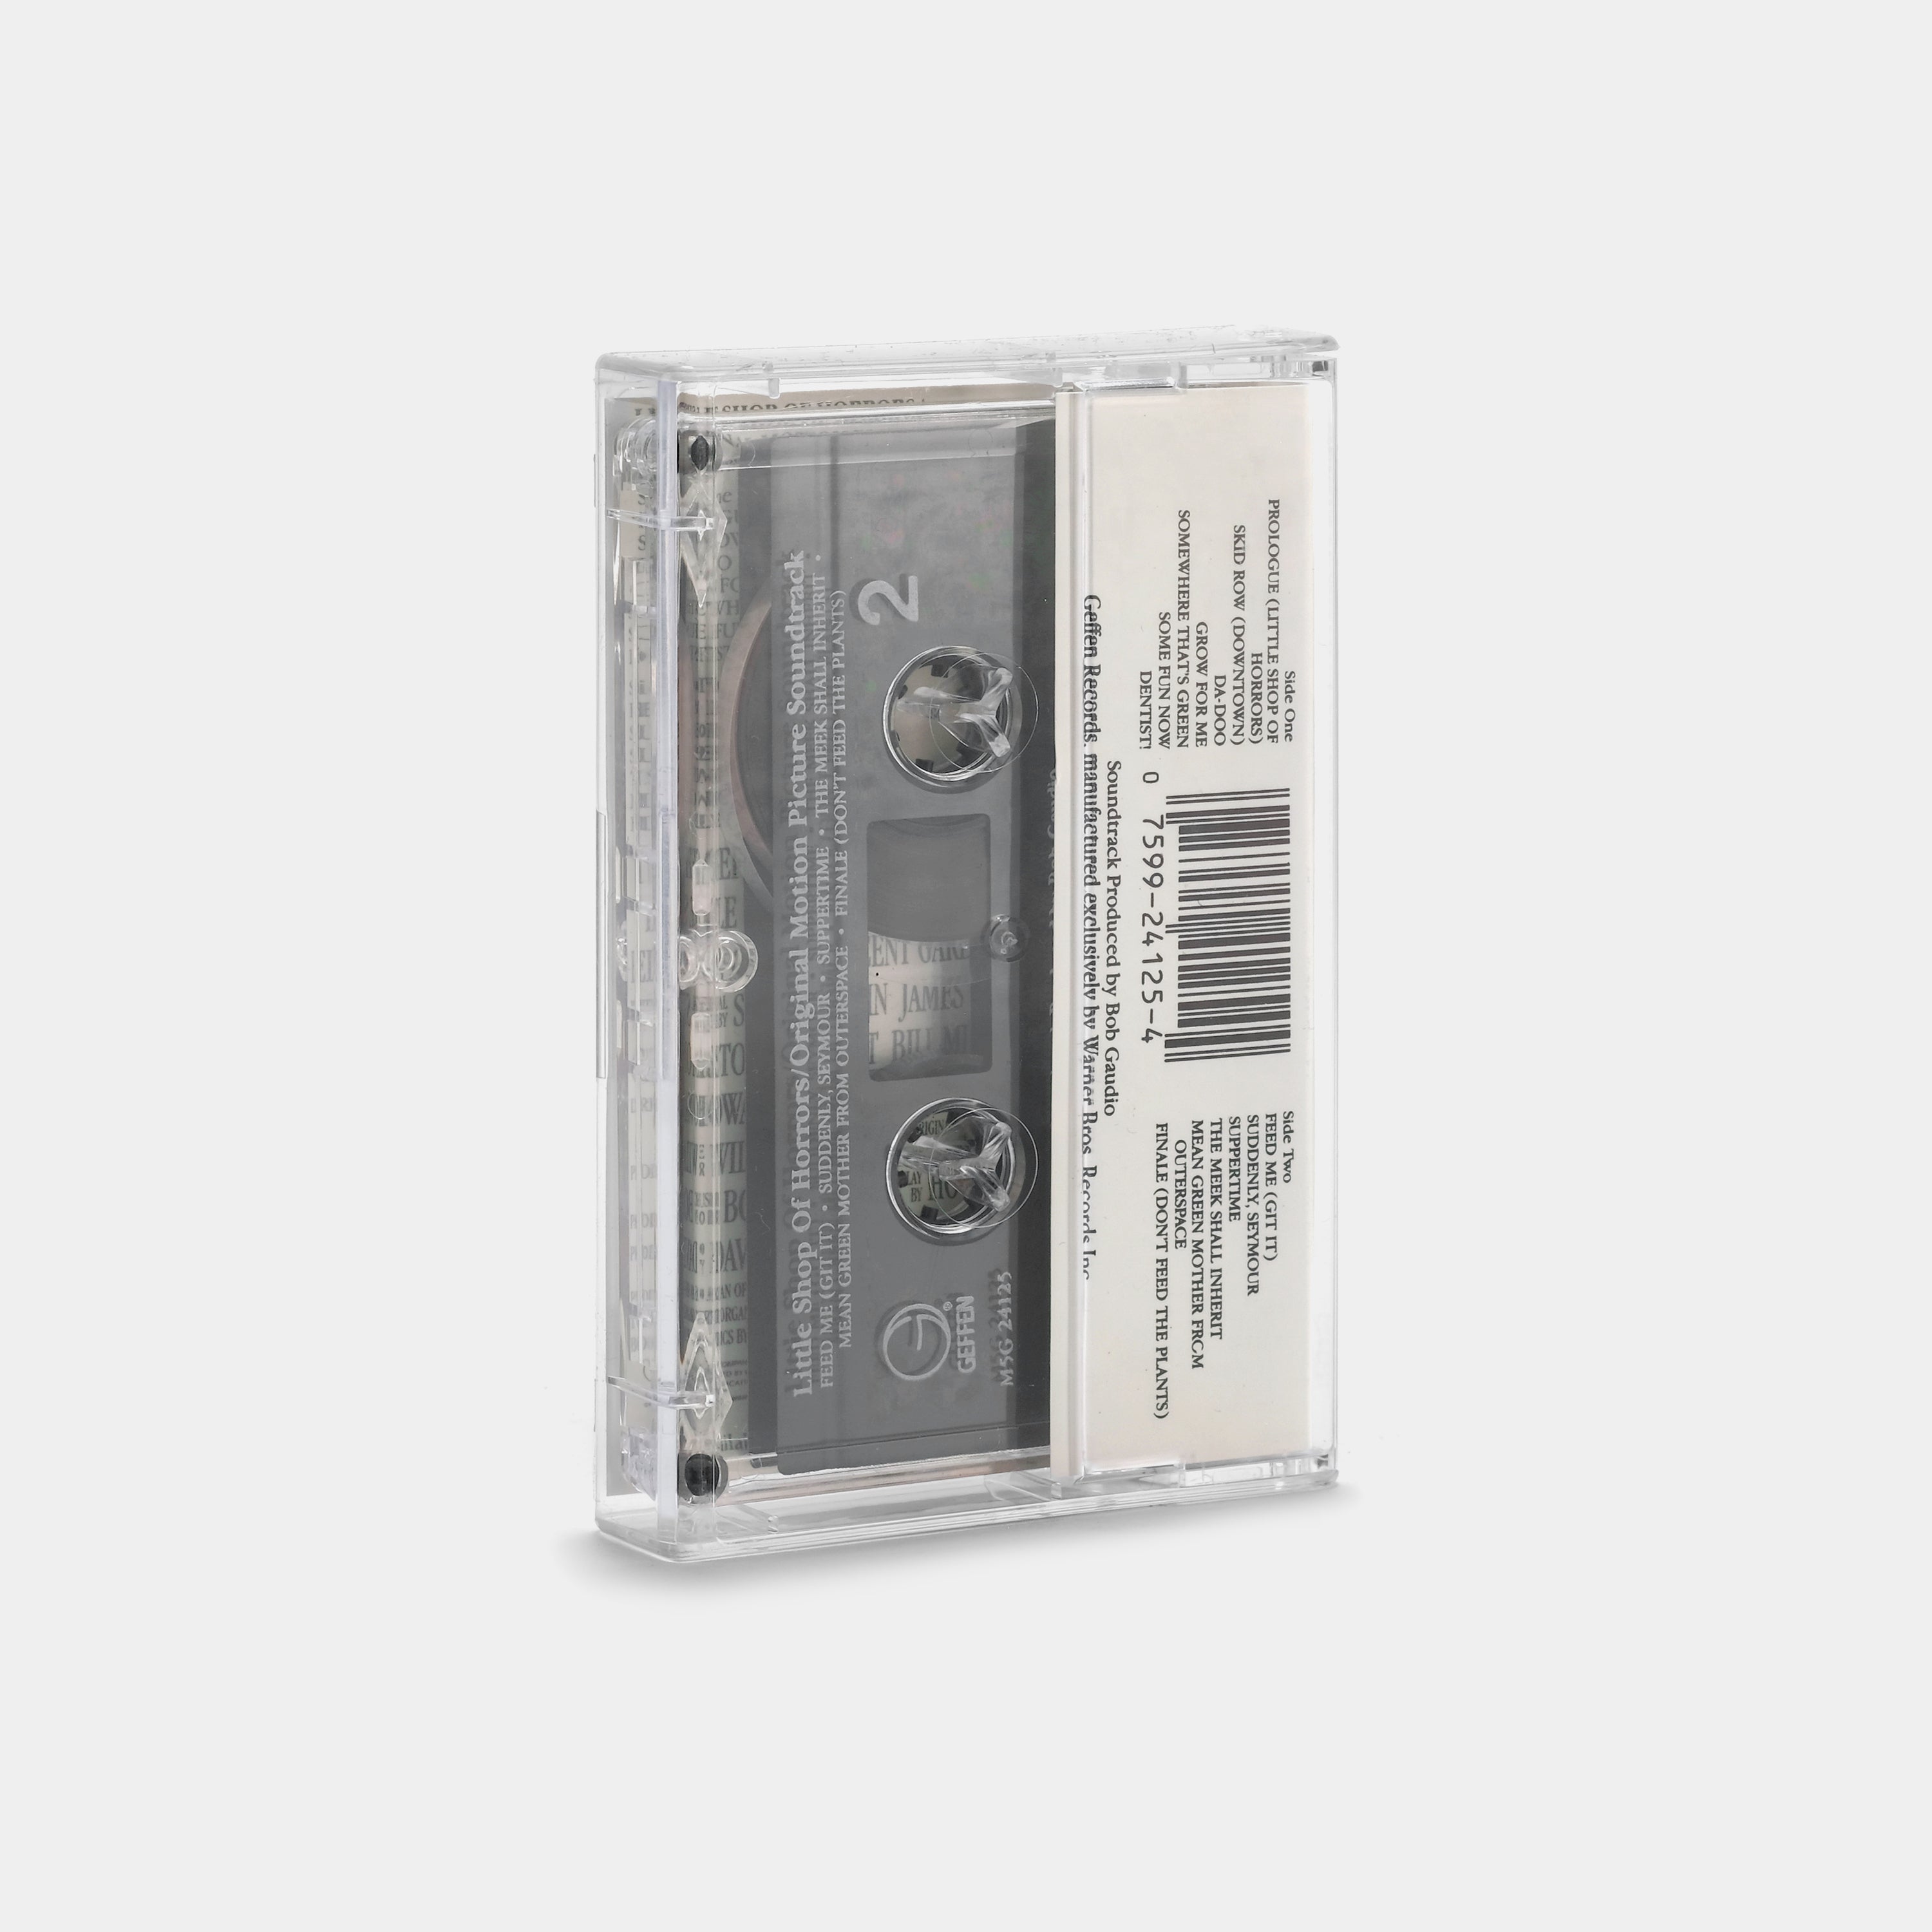 Little Shop of Horrors Original Motion Picture Soundtrack Cassette Tape